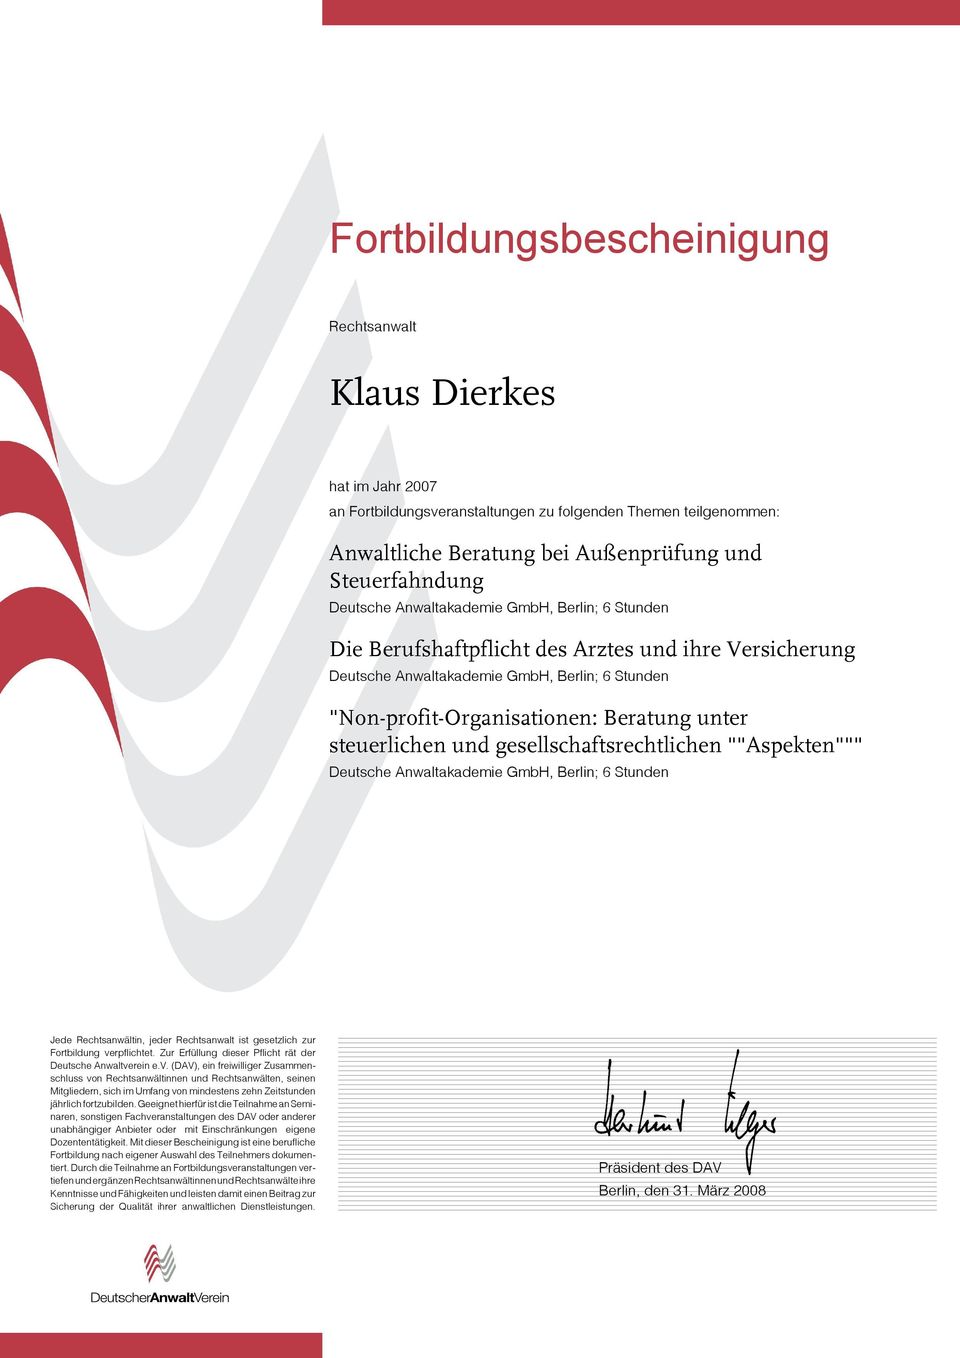 Anwaltakademie GmbH, Berlin; 6 Stunden "Non-profit-Organisationen: Beratung unter steuerlichen und